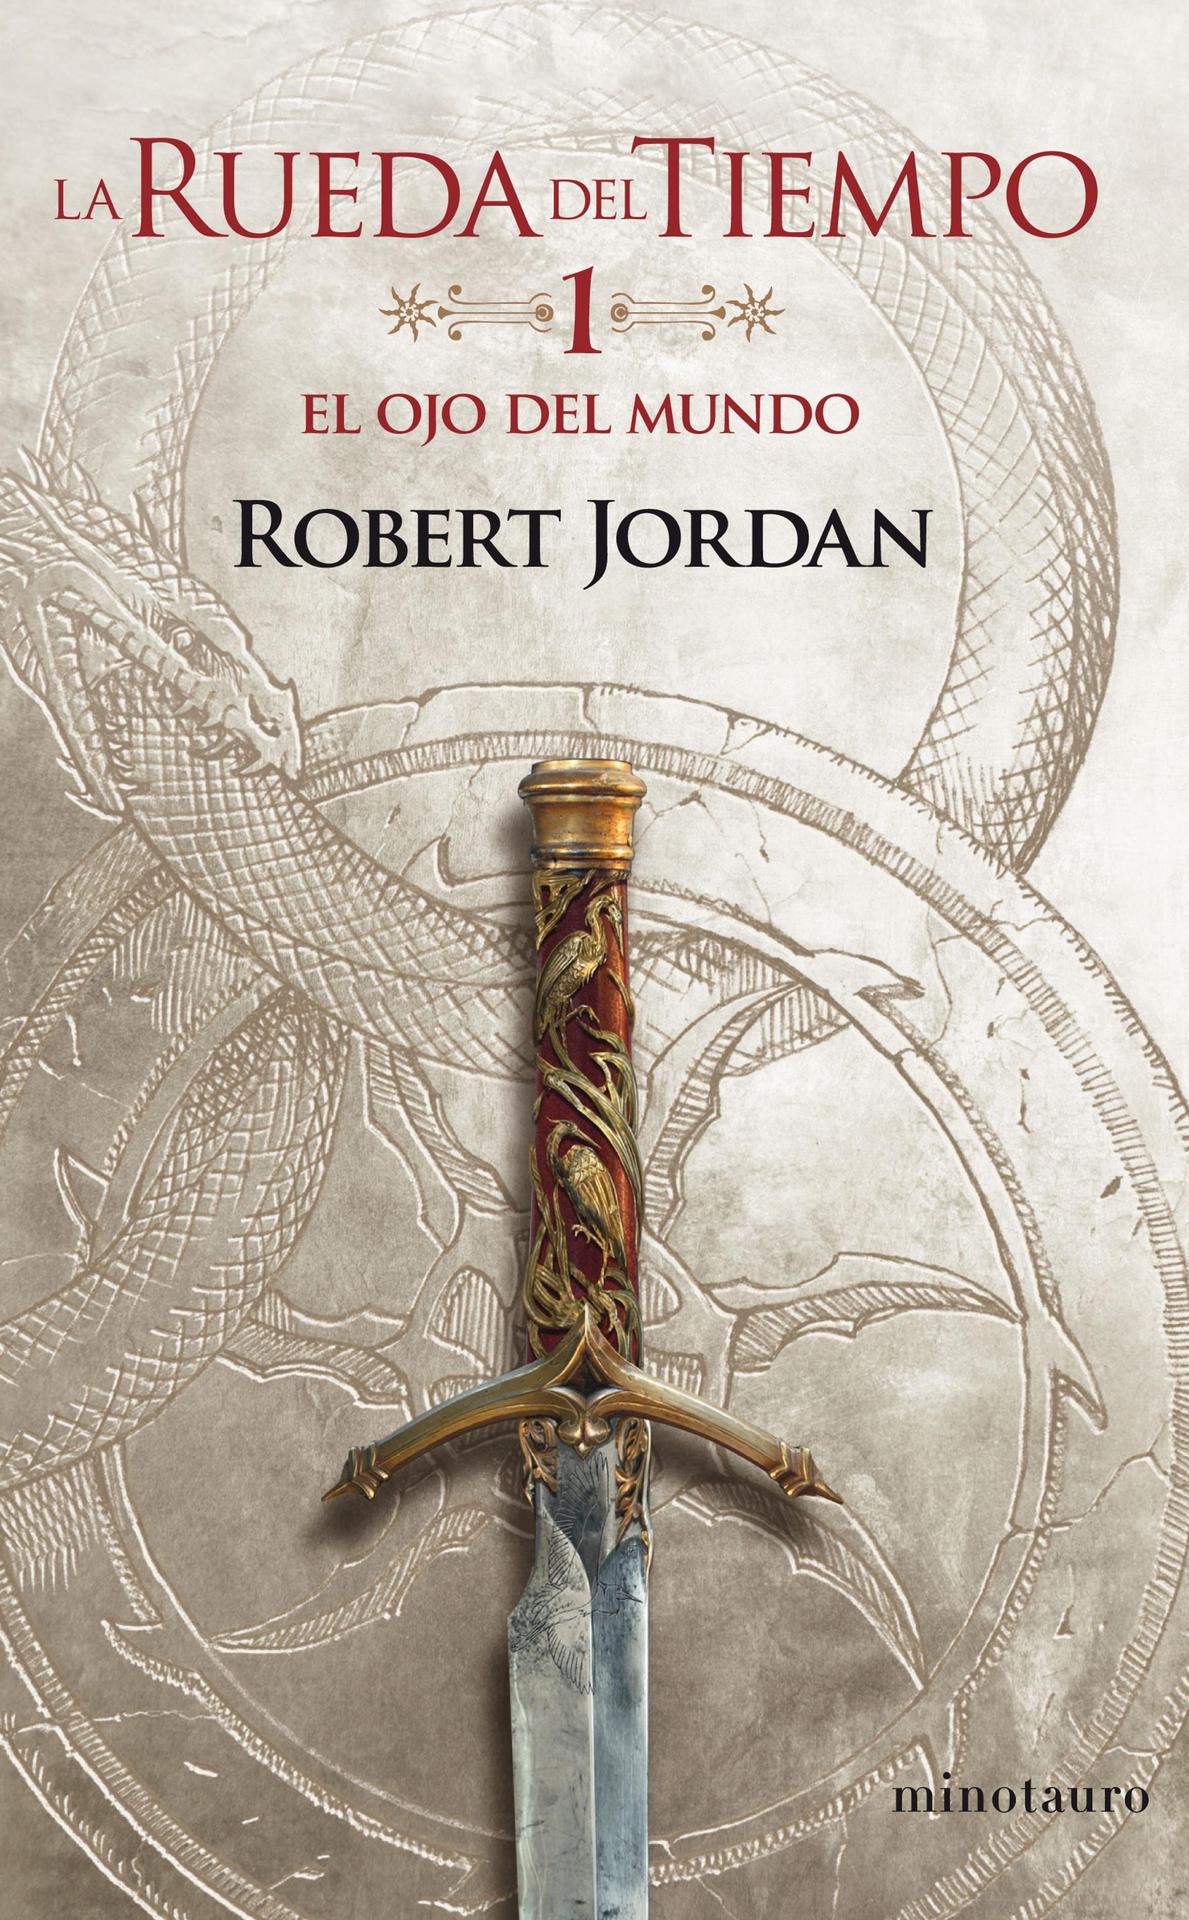 Robert Jordan: El ojo del mundo (Spanish language)